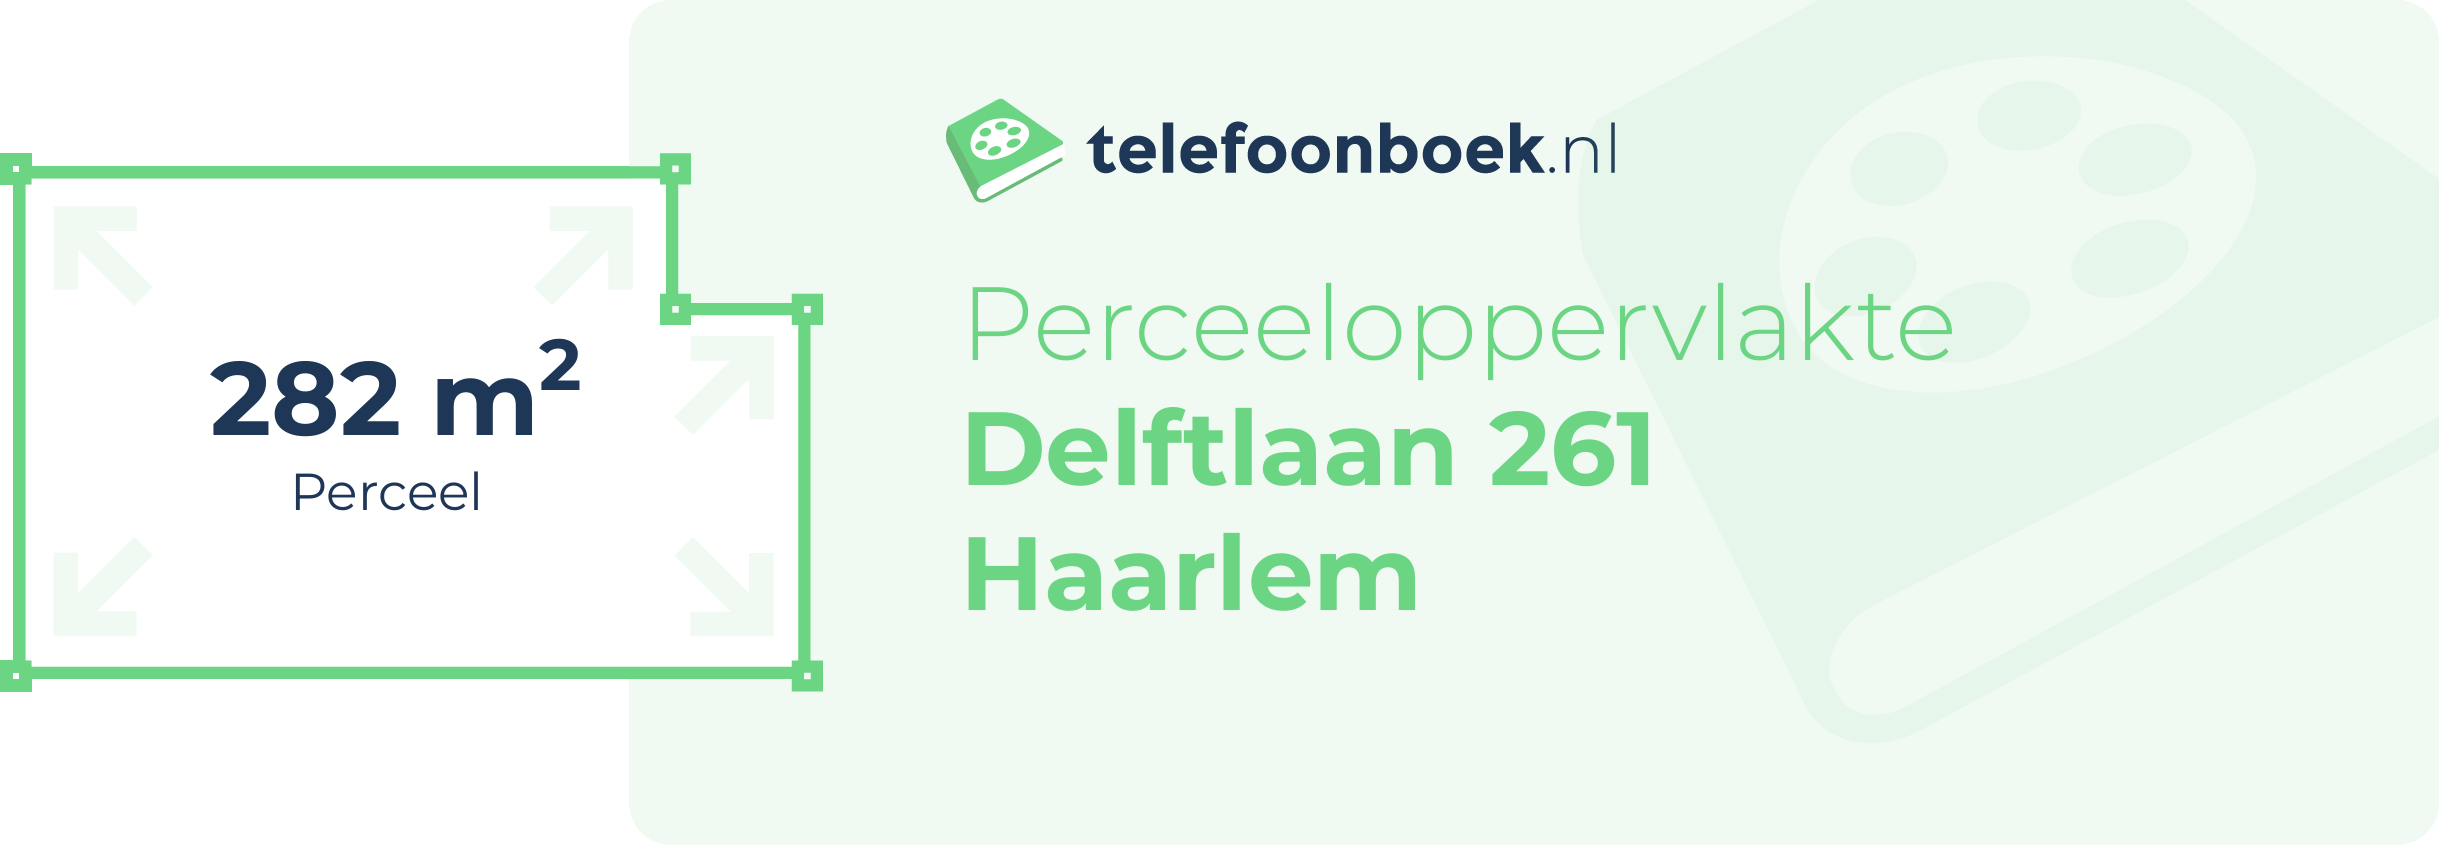 Perceeloppervlakte Delftlaan 261 Haarlem